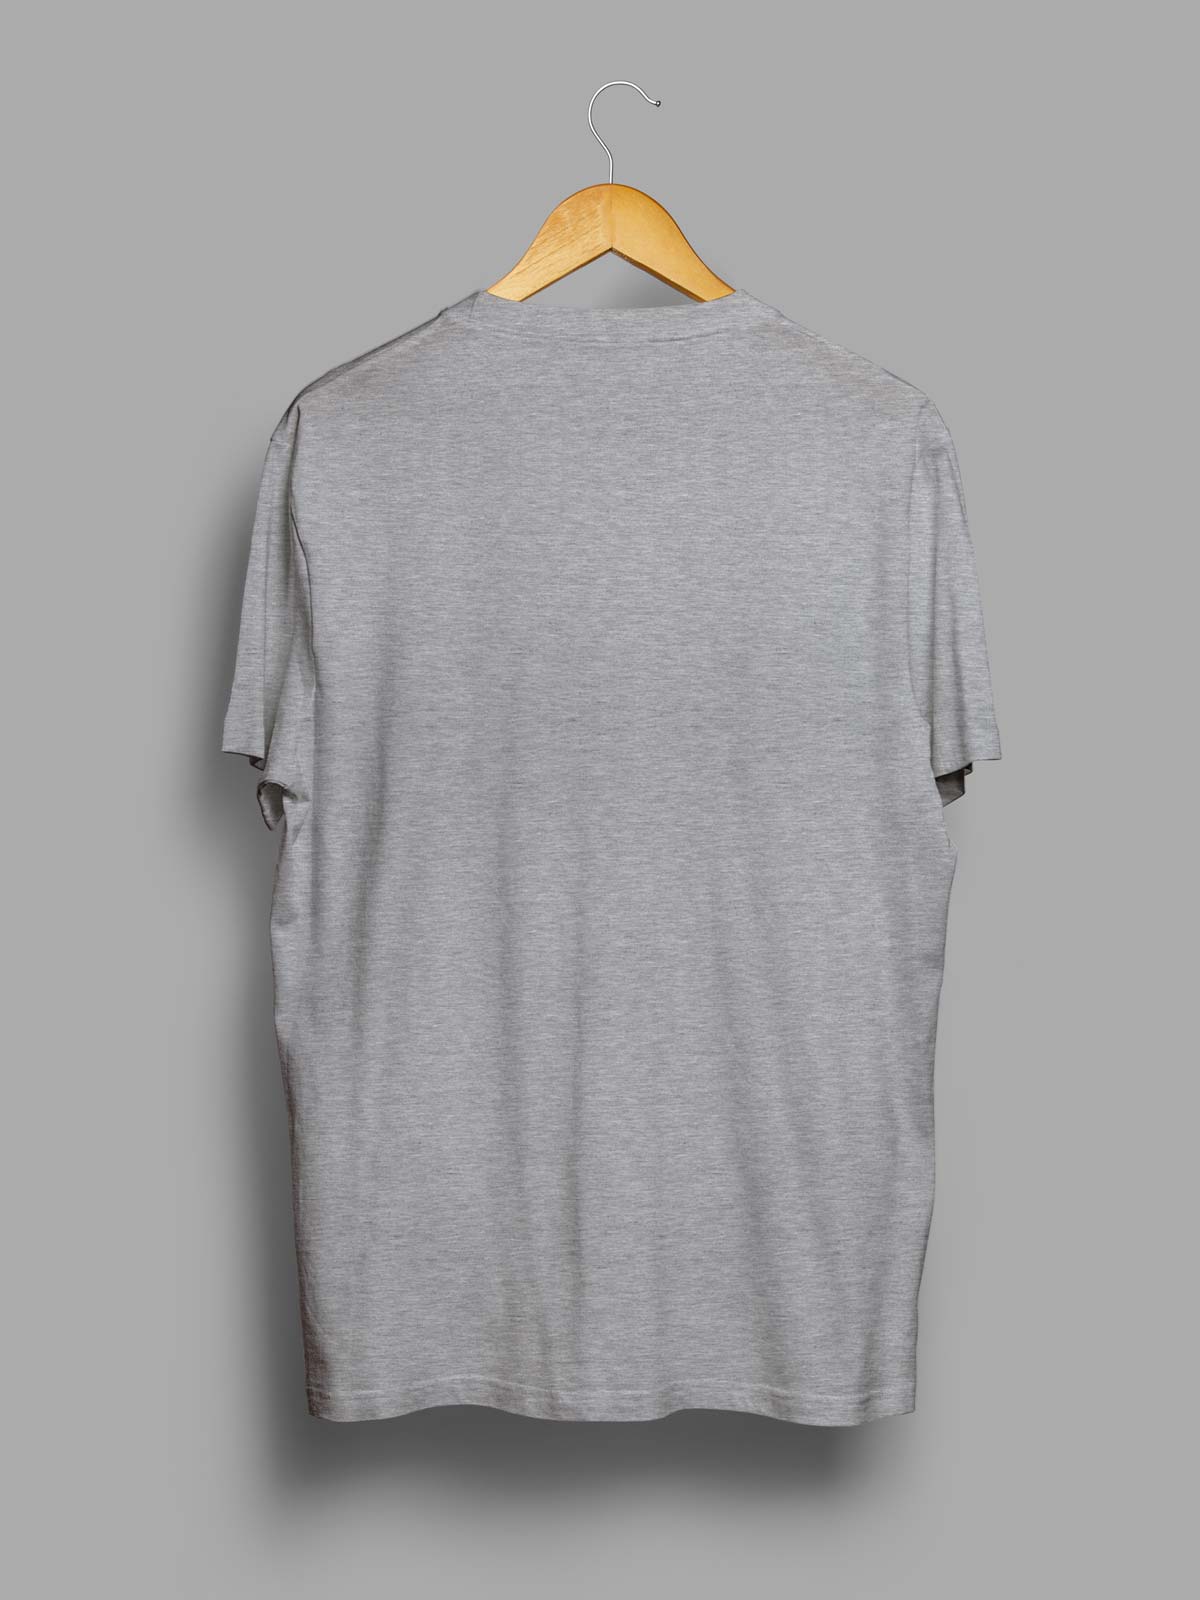 Light-grey-t-shirt-for-men by Ghumakkad